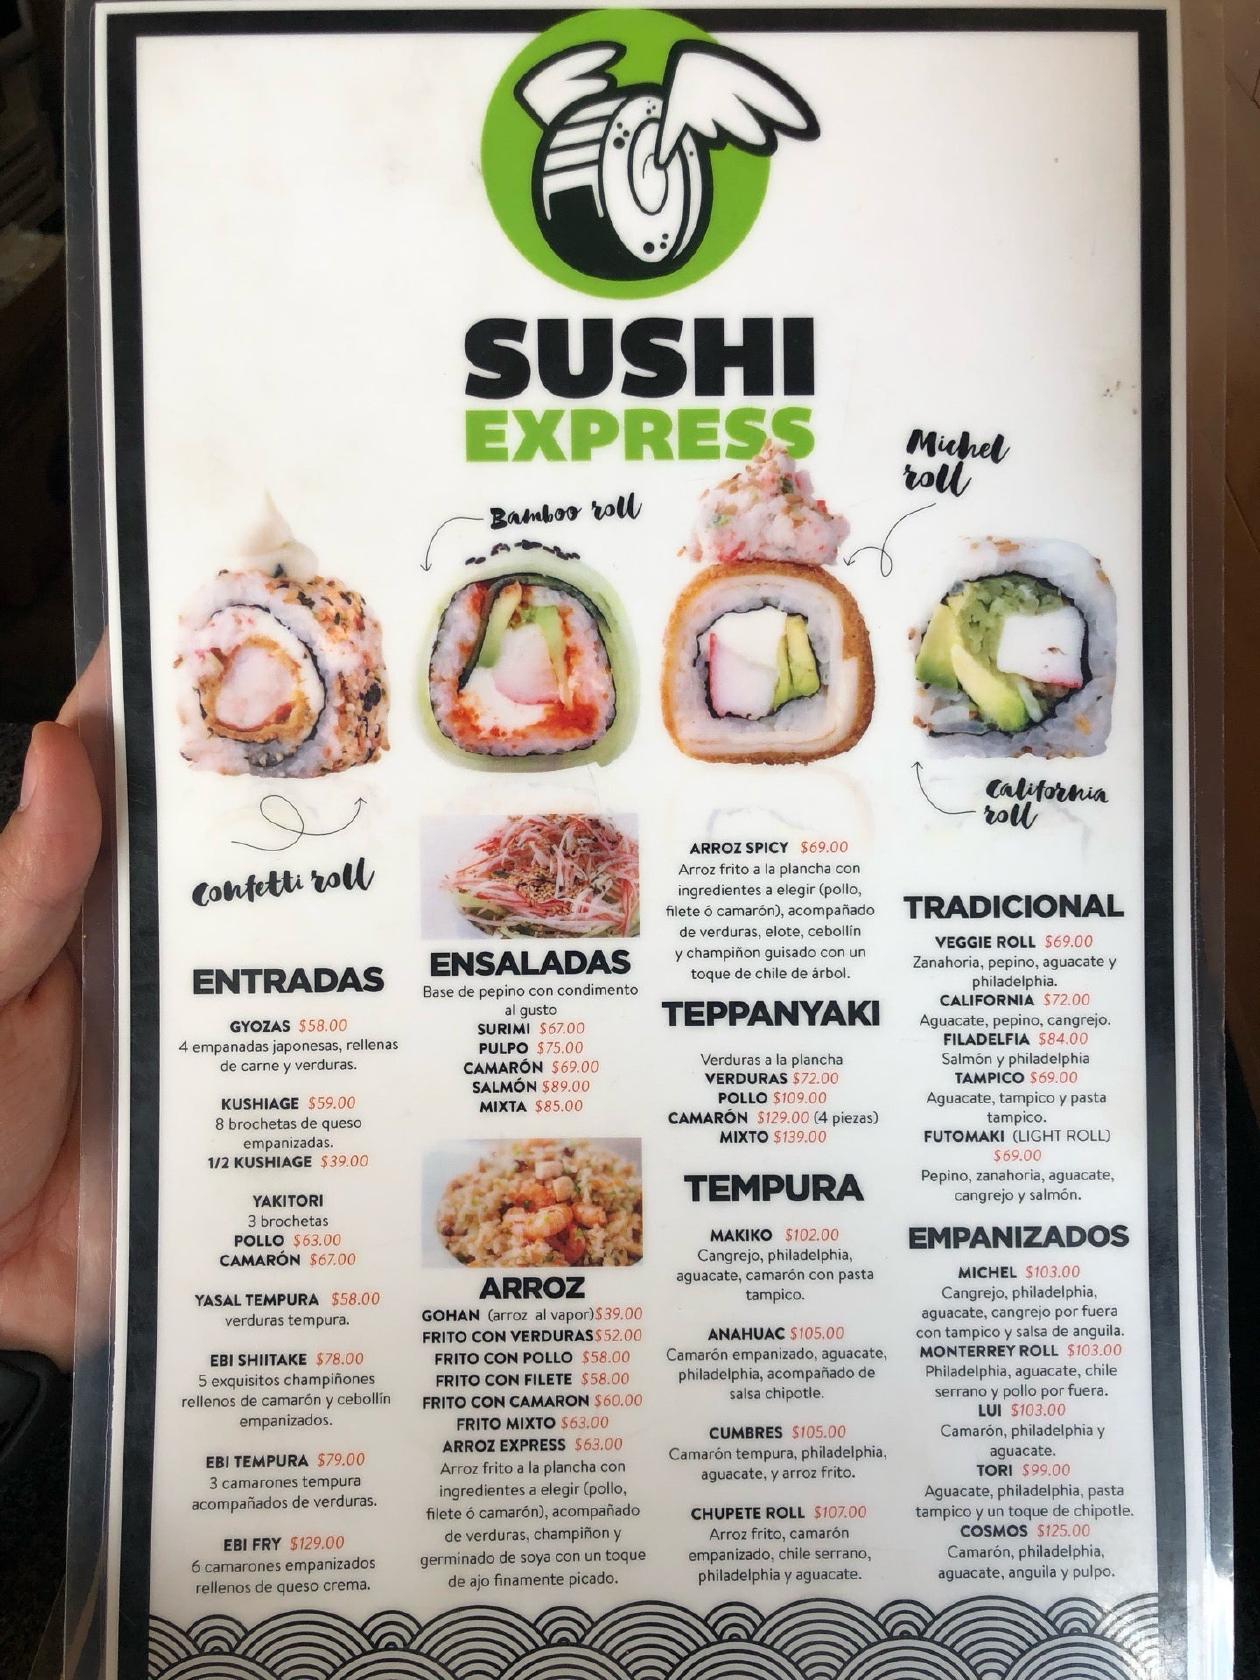 Menu at Sushi Express restaurant, San Nicolás de los Garza, Lago de Chapala  224